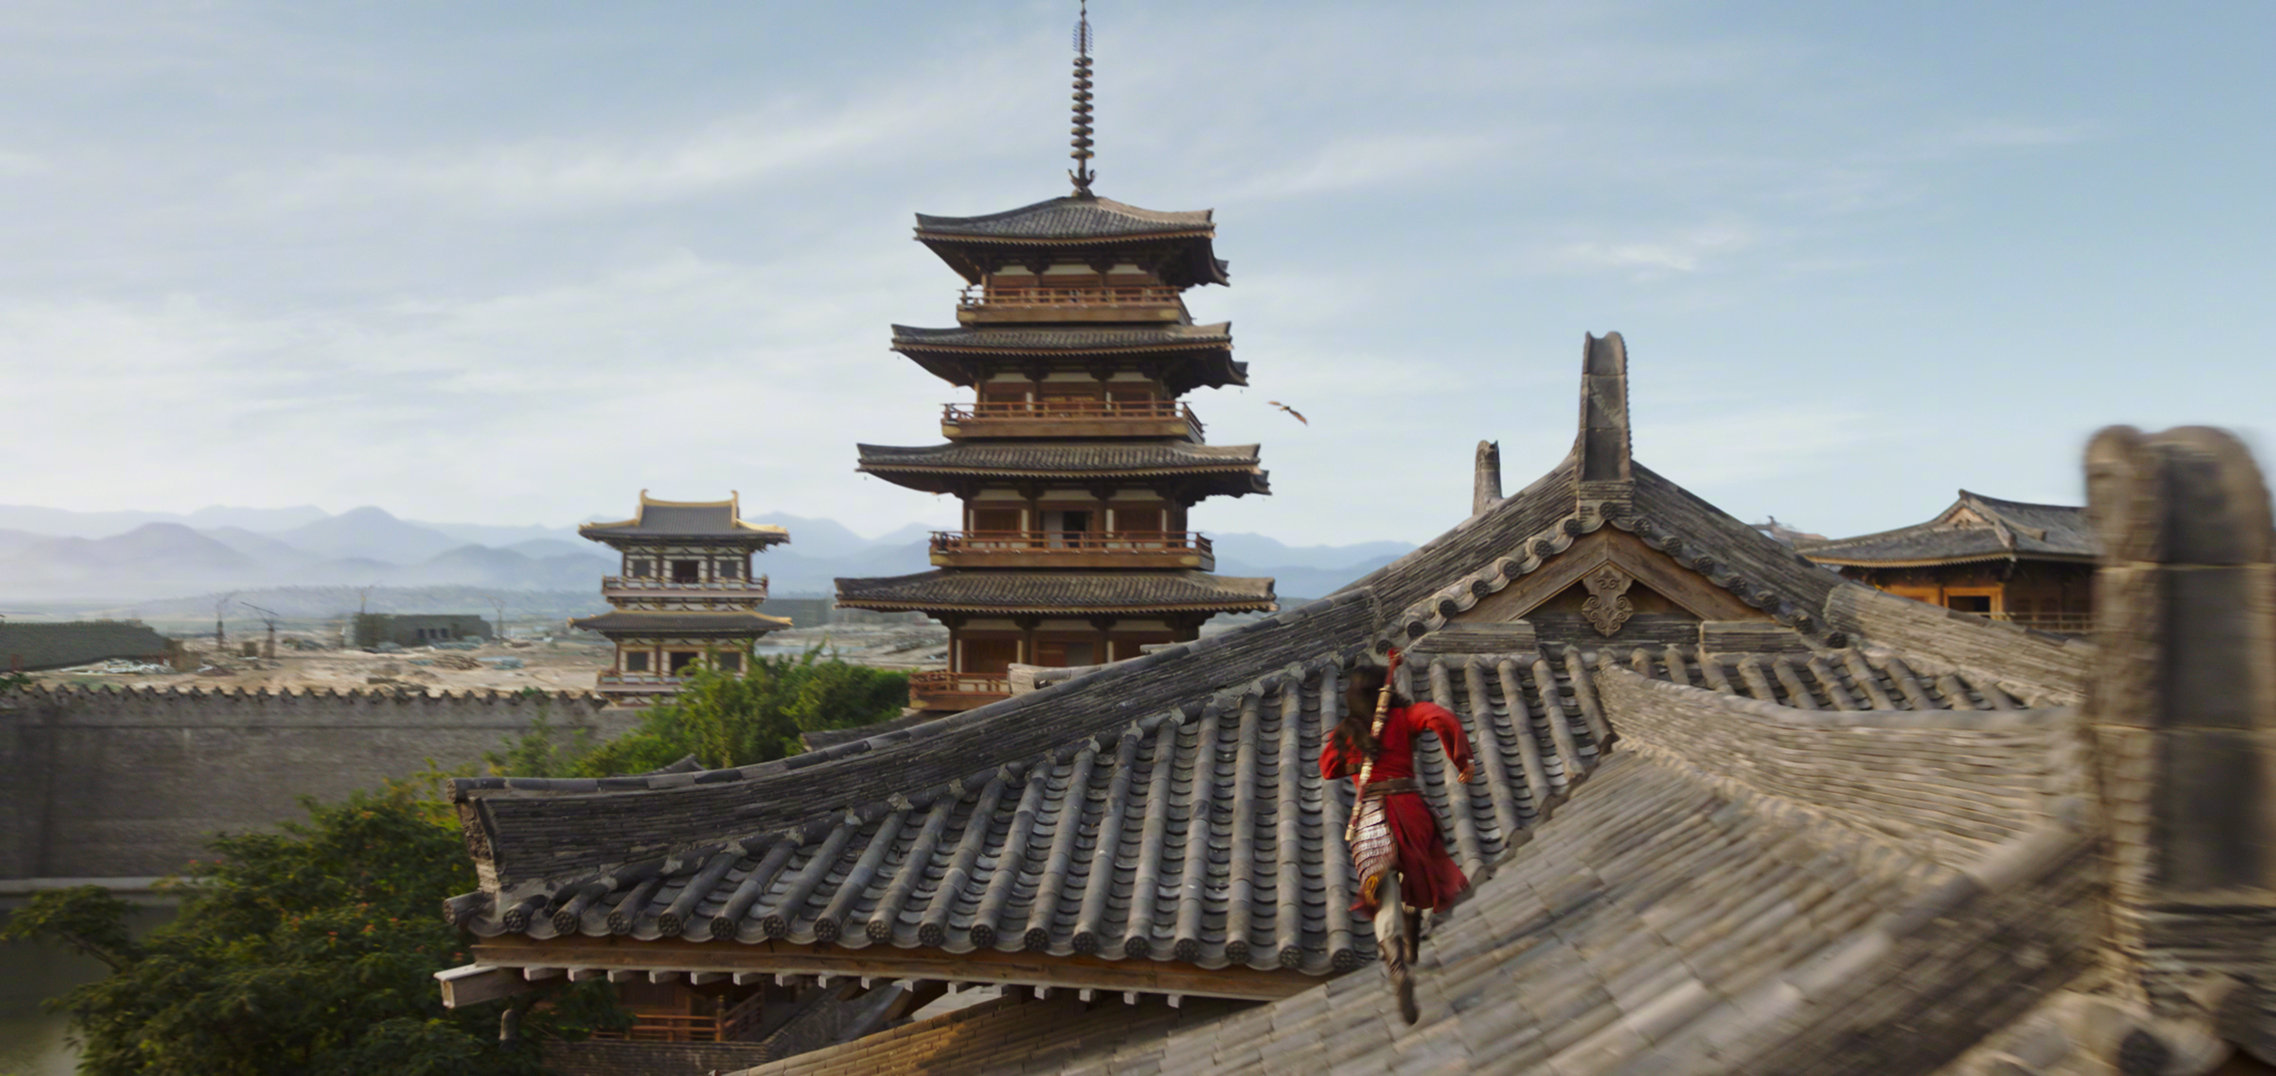 《花木兰》皇城取景地 陈凯歌也曾在此拍电影